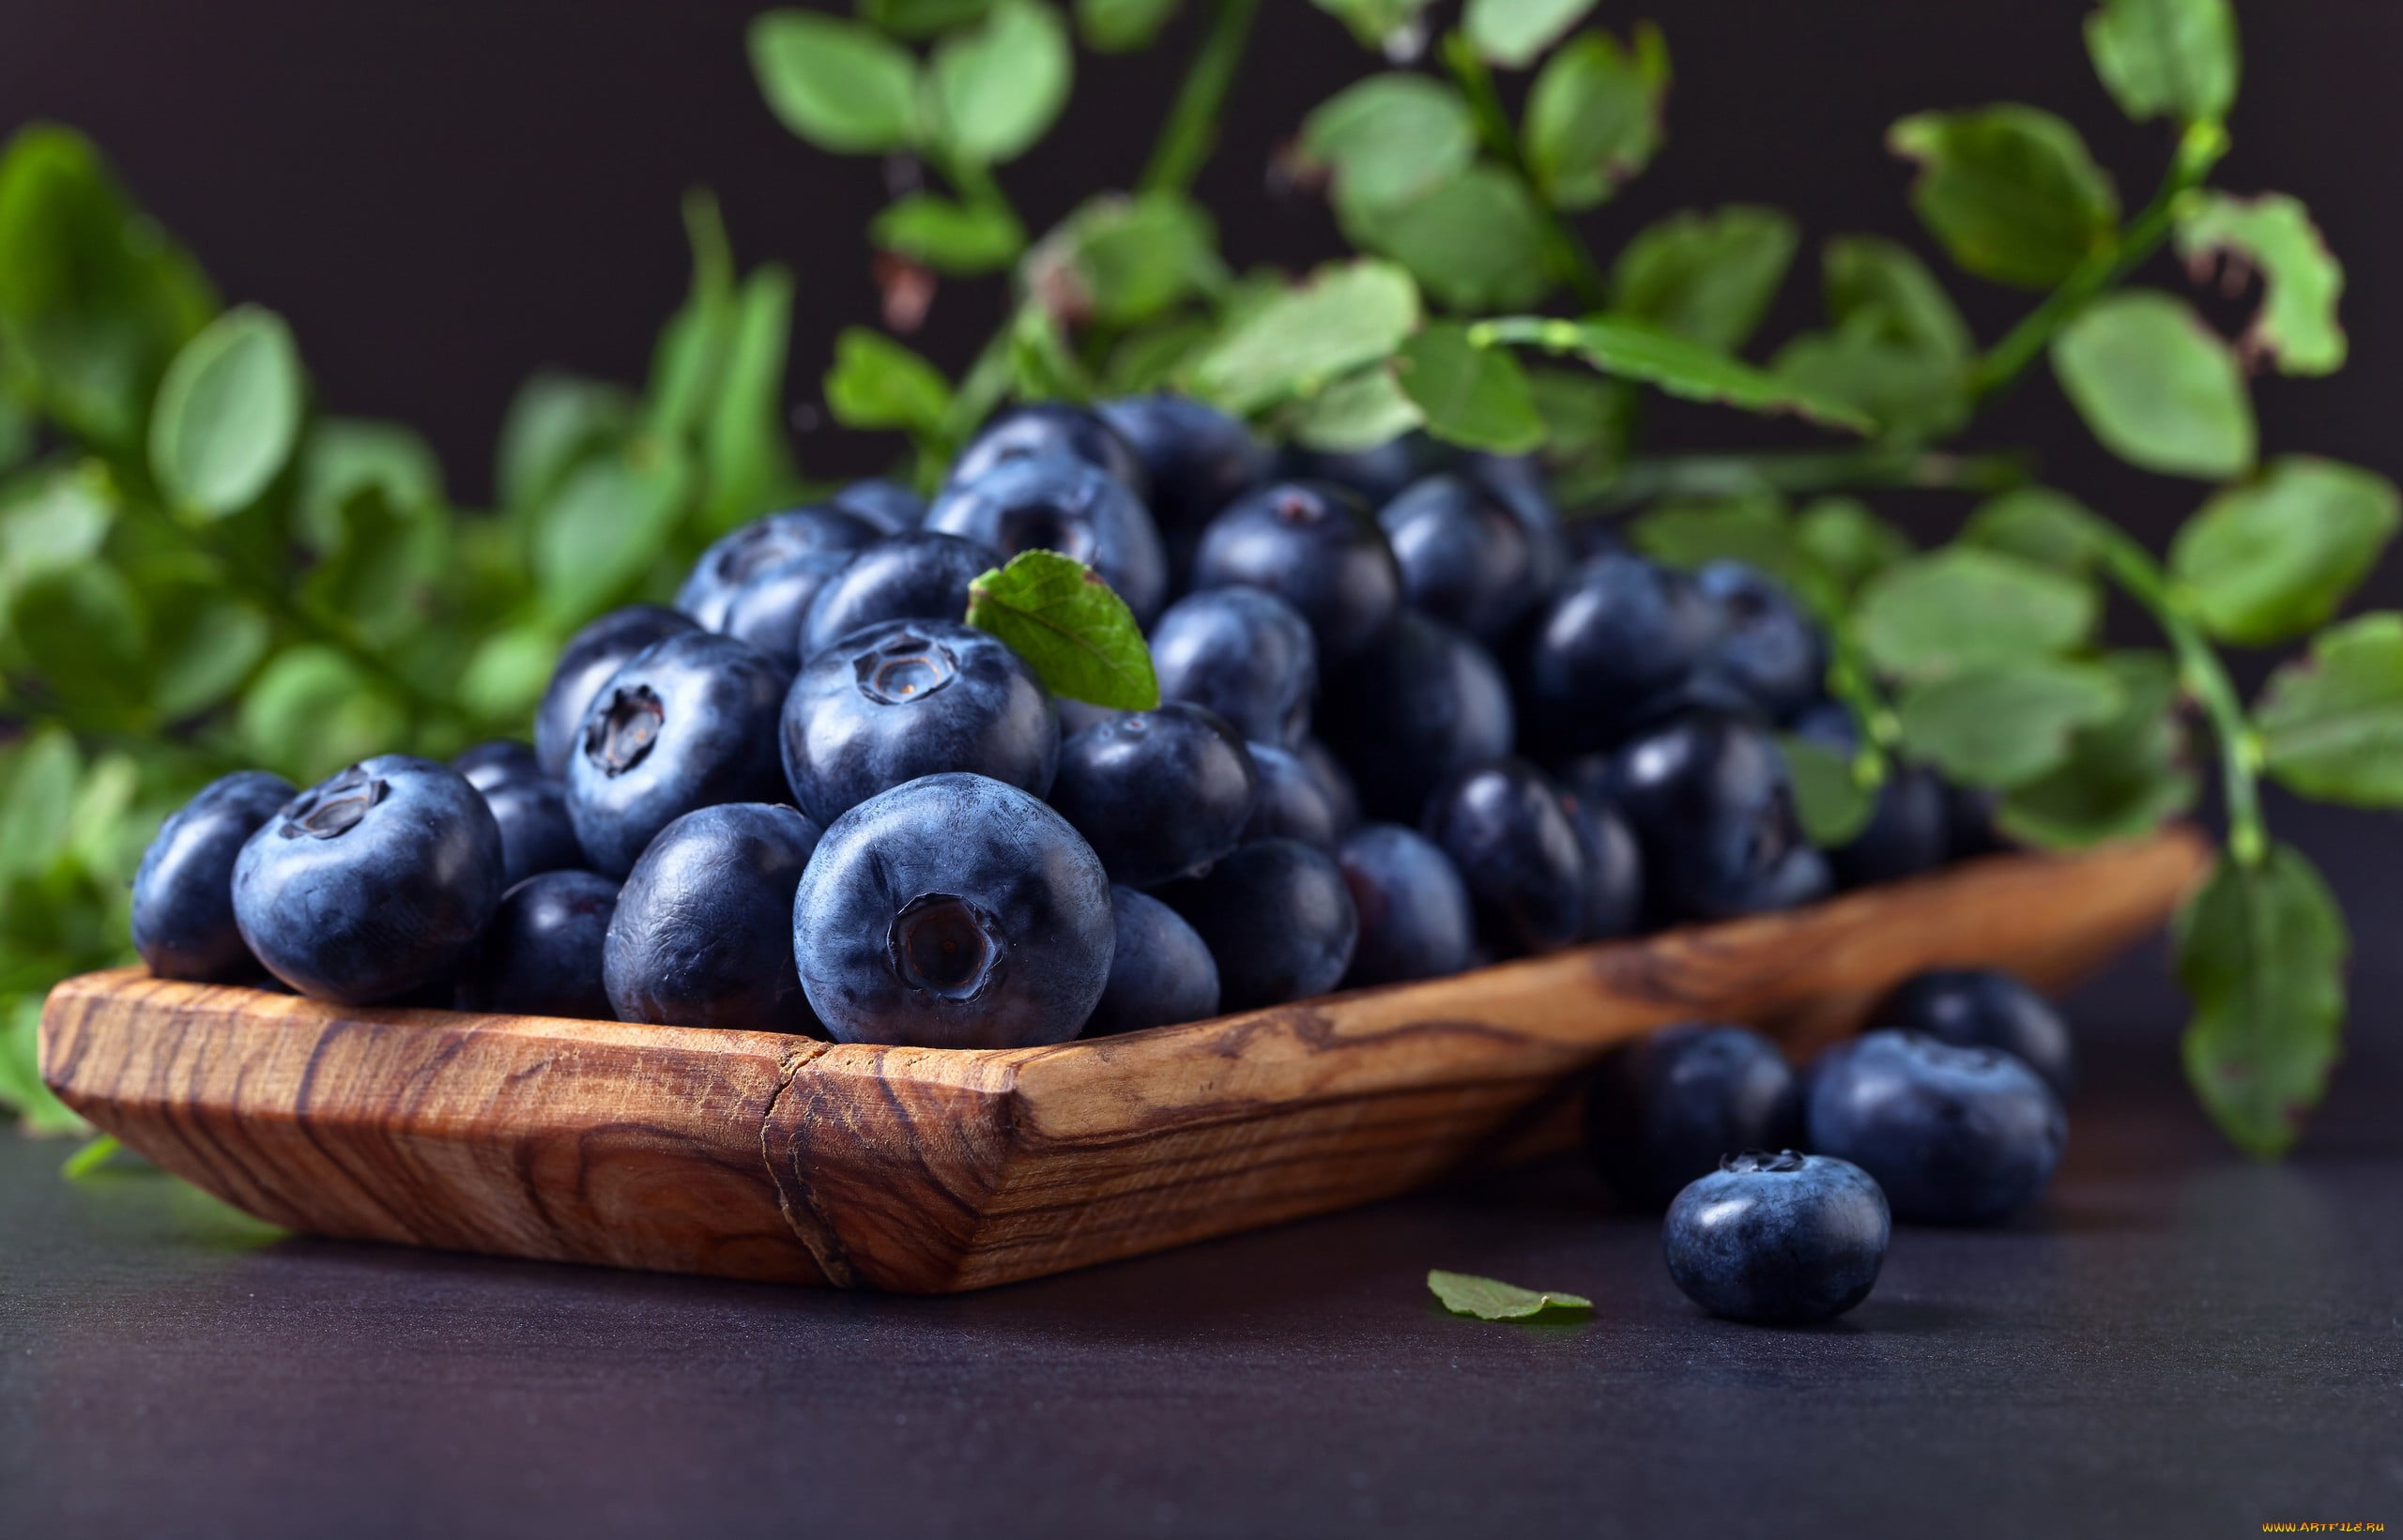 blue, green, berries, food, blackberries, macro, healthy eating